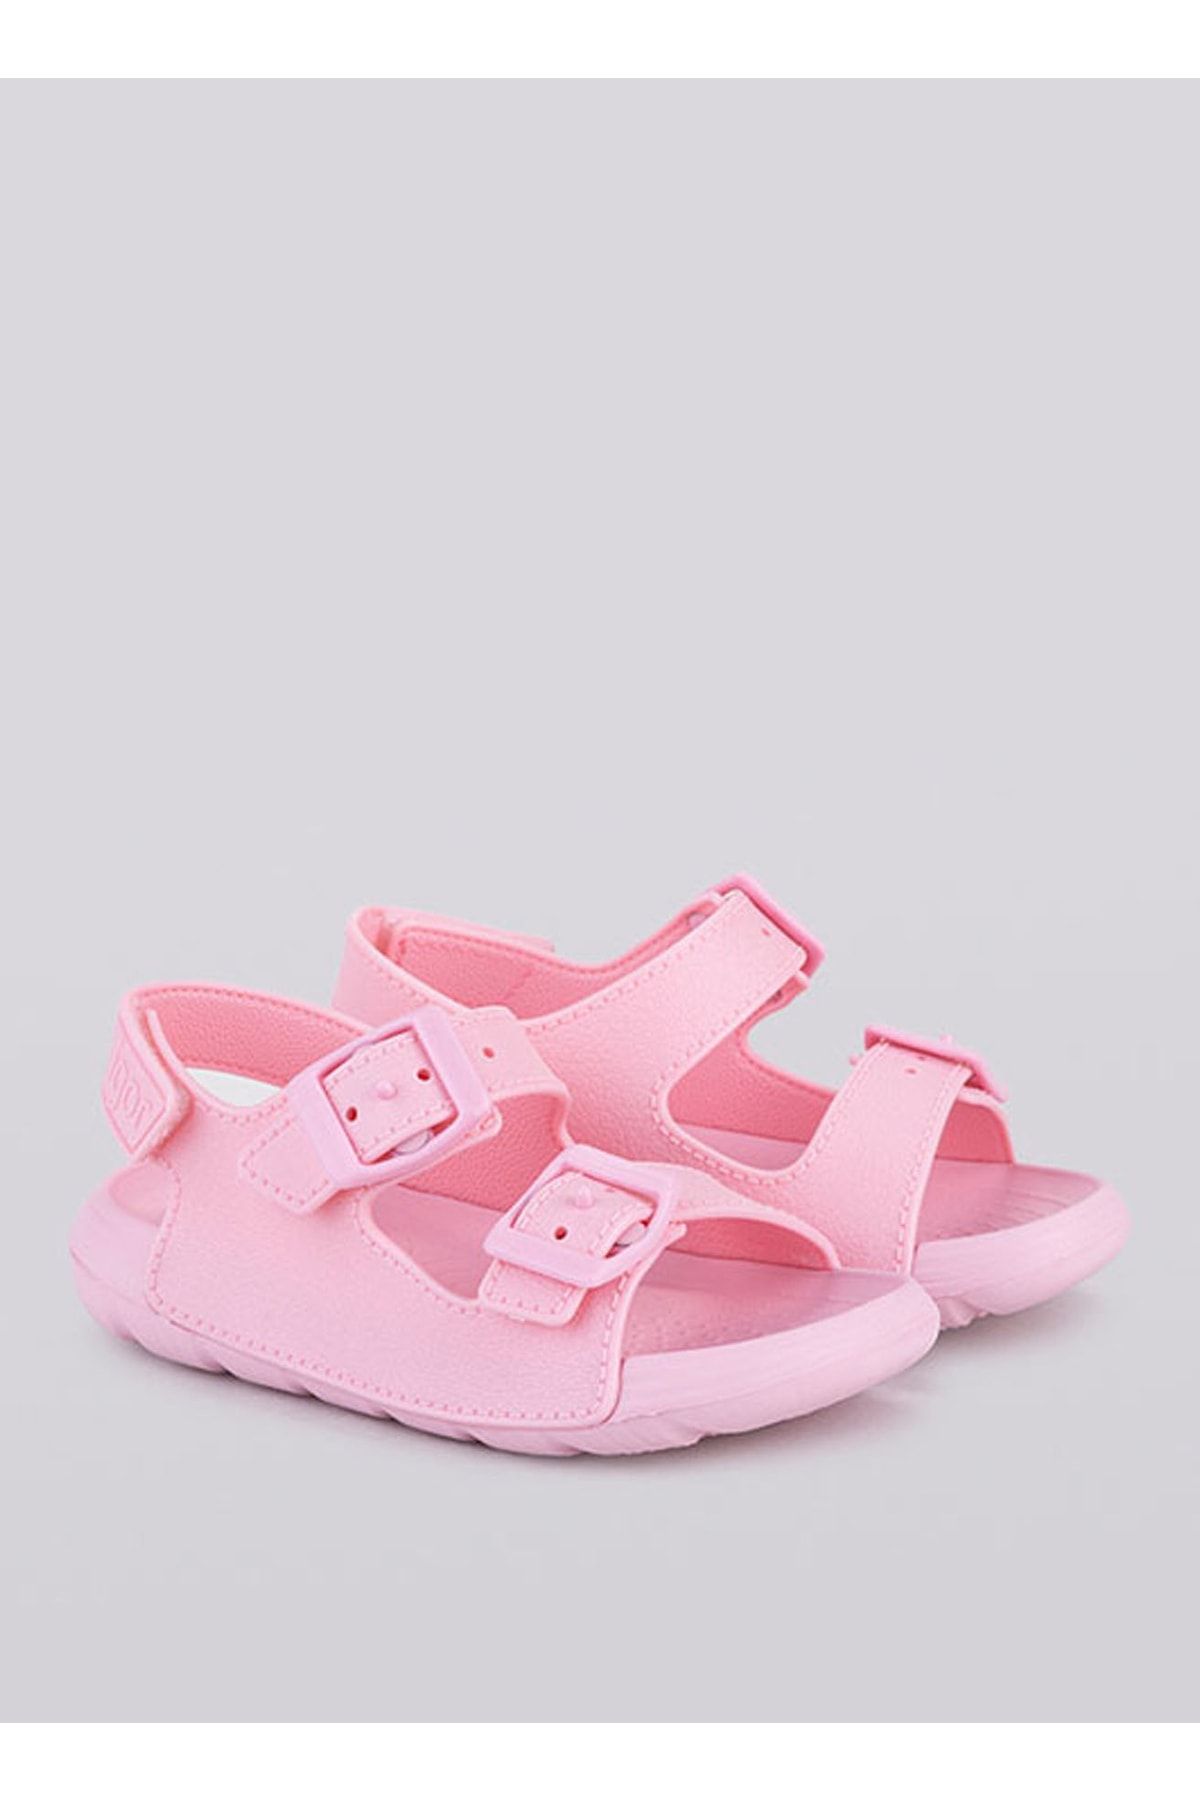 IGOR Pembe Kız Çocuk Sandalet S10298 Mc